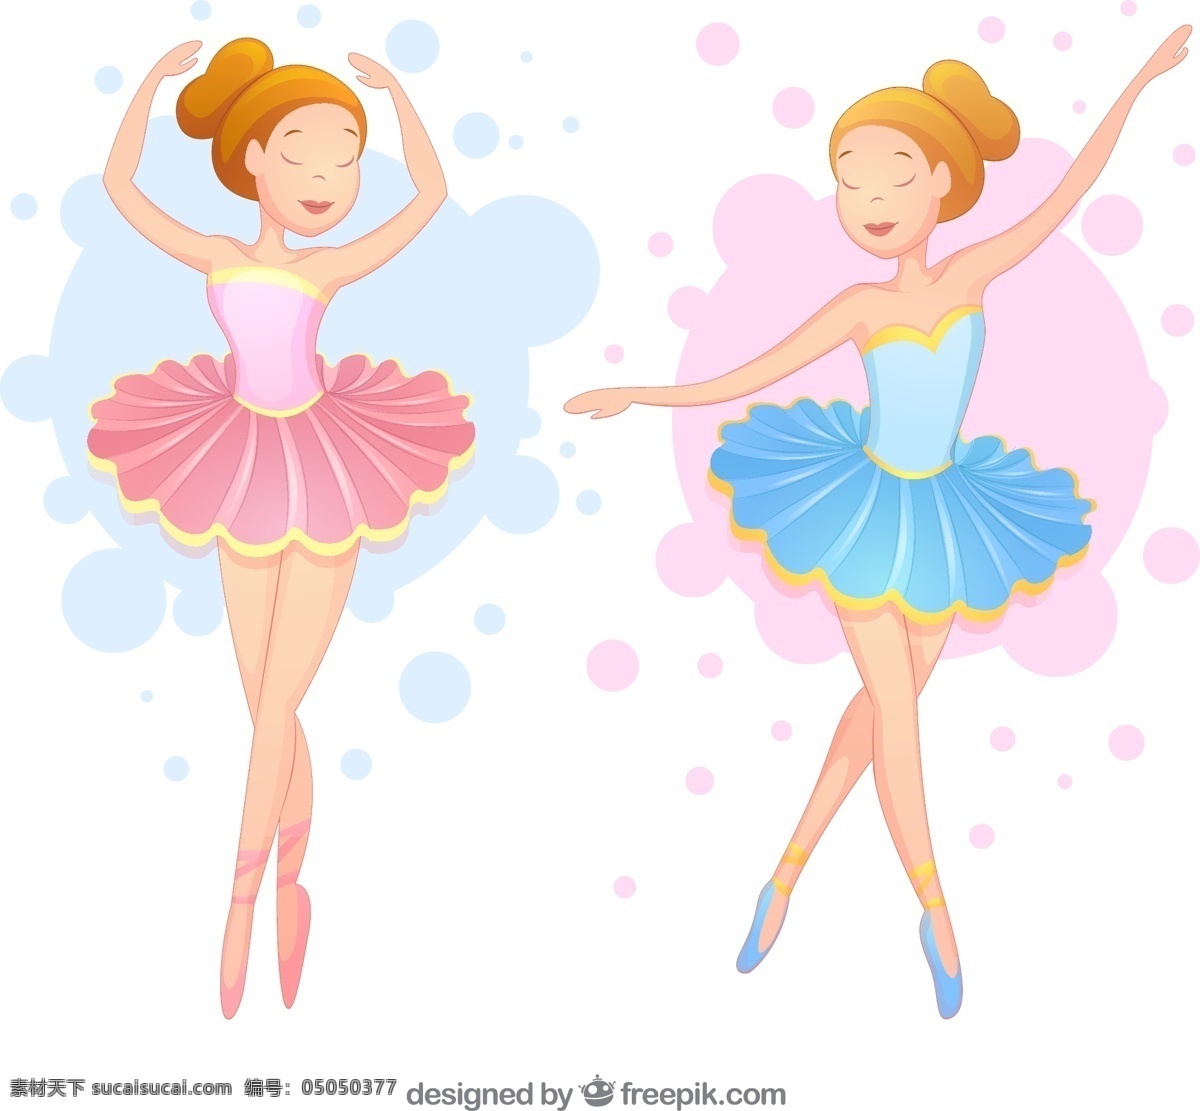 两 种 颜色 美丽 芭蕾舞 演员 手 舞蹈 蓝 手绘 粉红色 艺术 可爱 绘画 芭蕾 舞蹈家 艺术家 拉 移动 运动 素描